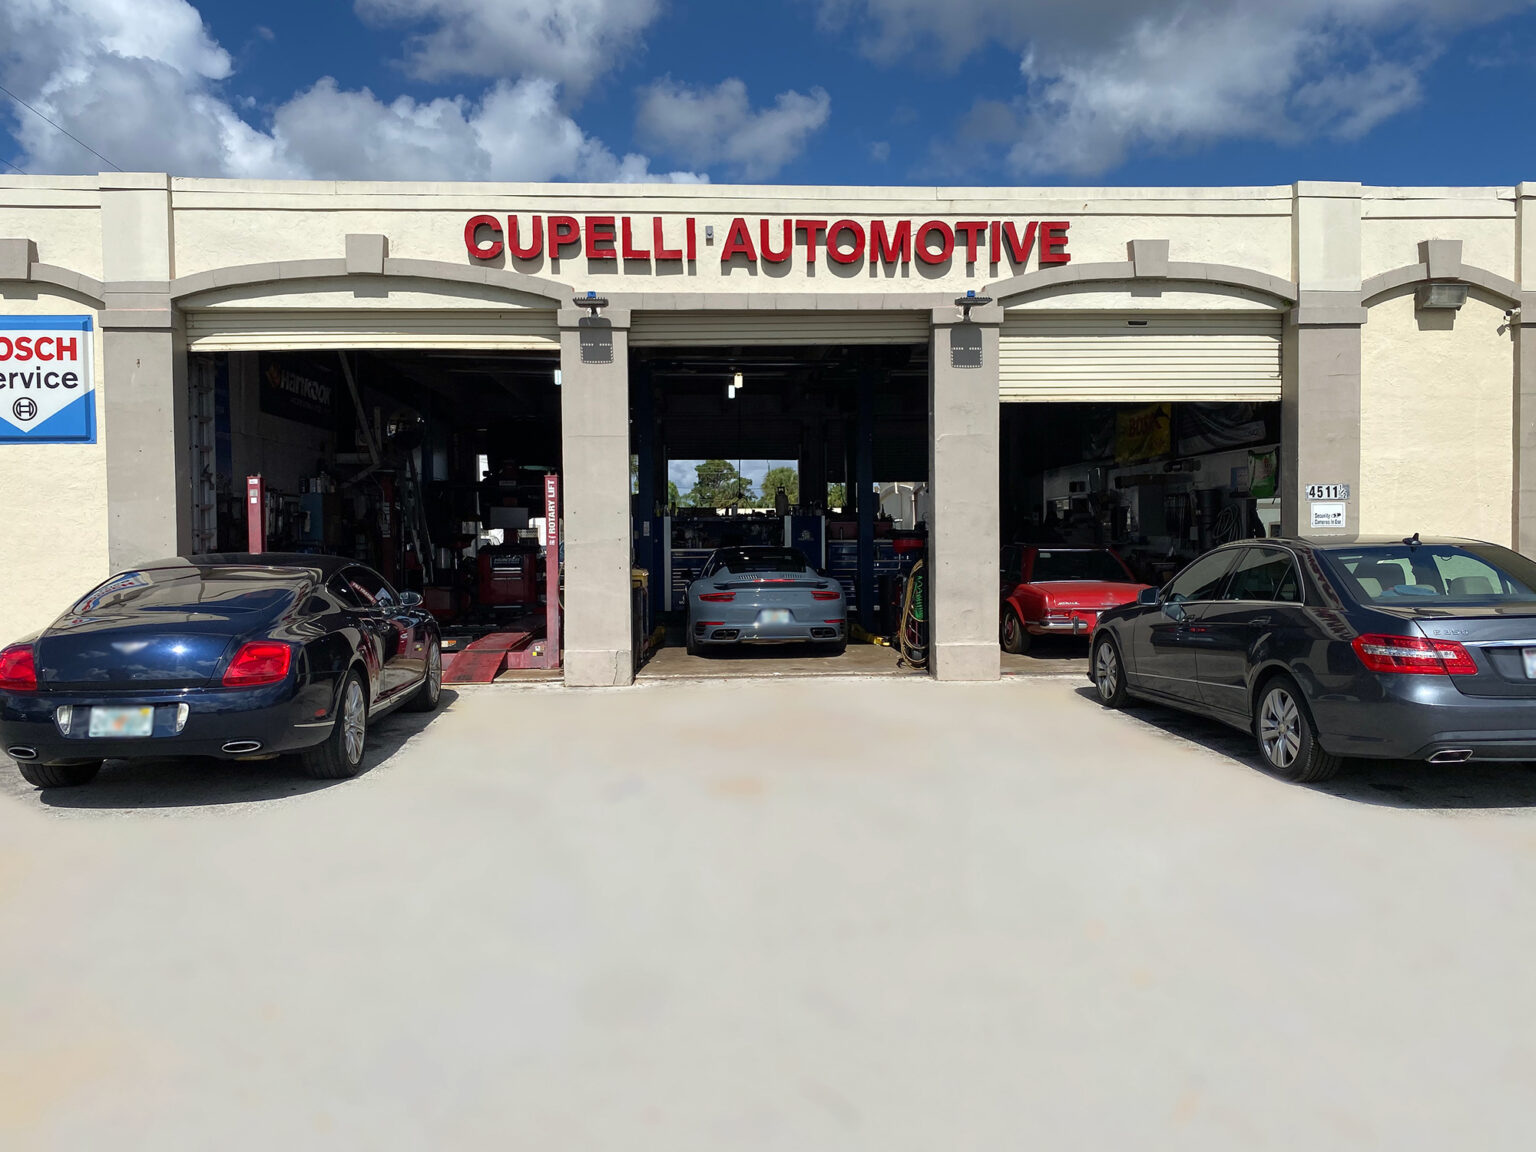 Cupelli Automotive